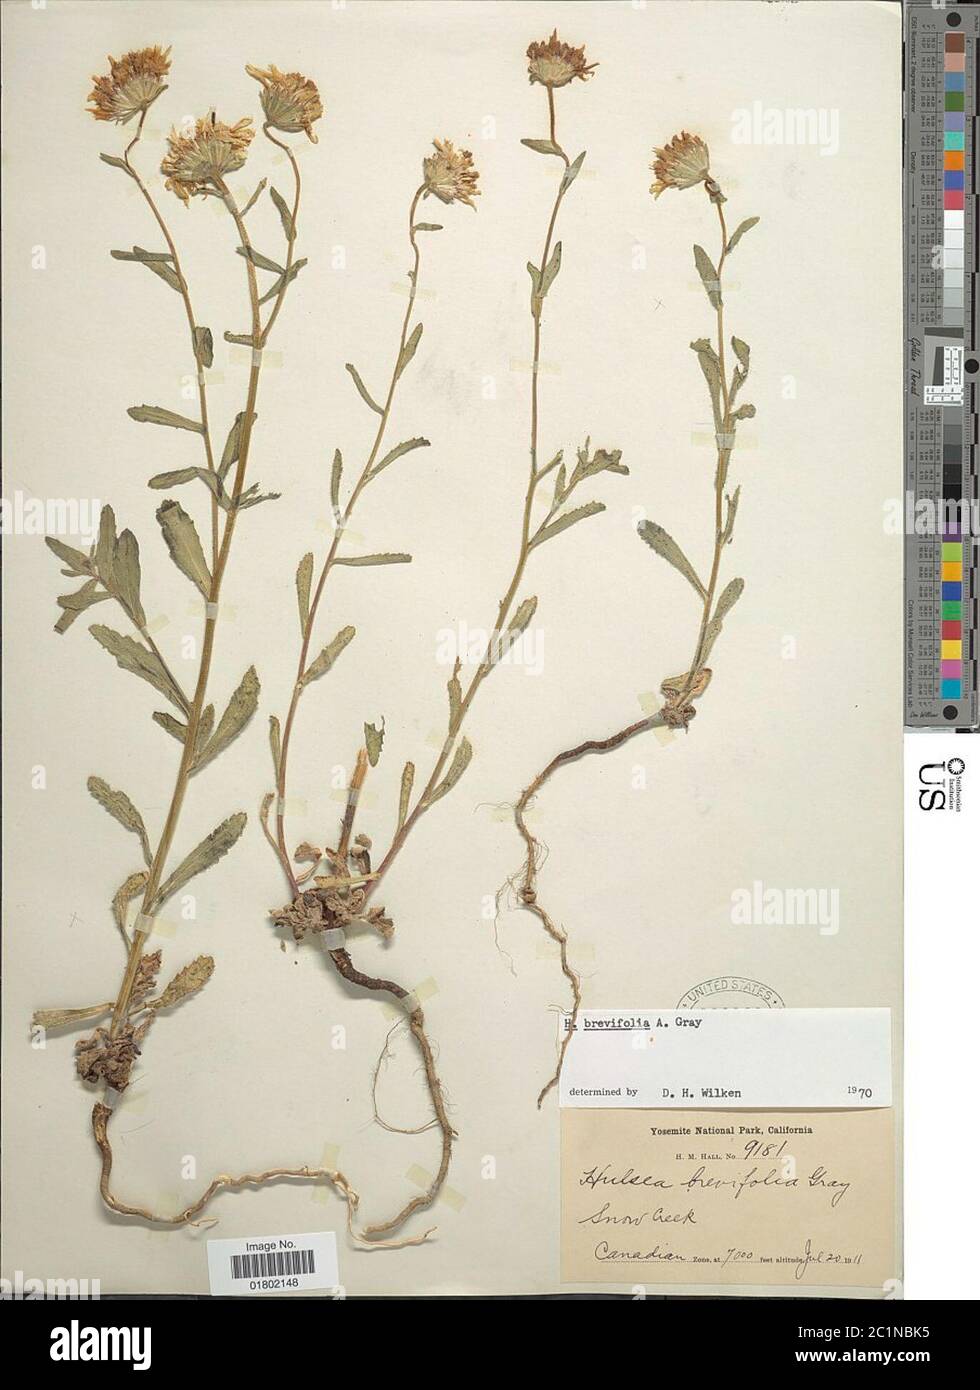 Hulsea brevifolia A Gray Hulsea brevifolia A Gray. Stock Photo